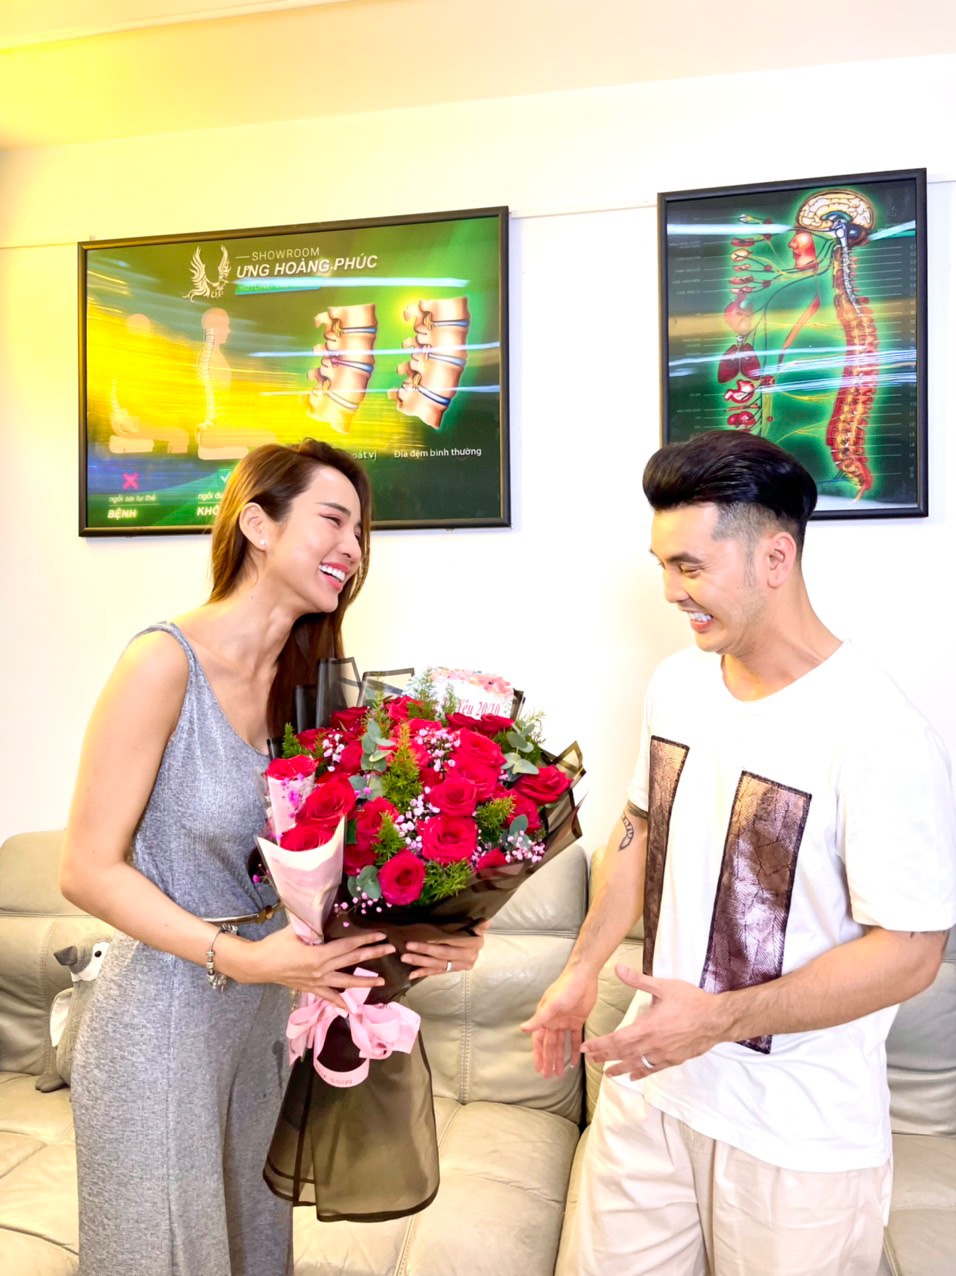 Siêu mẫu Kim Cương xúc động với món quà bất ngờ ngày Phụ nữ Việt Nam của Ưng Hoàng Phúc - ảnh 2